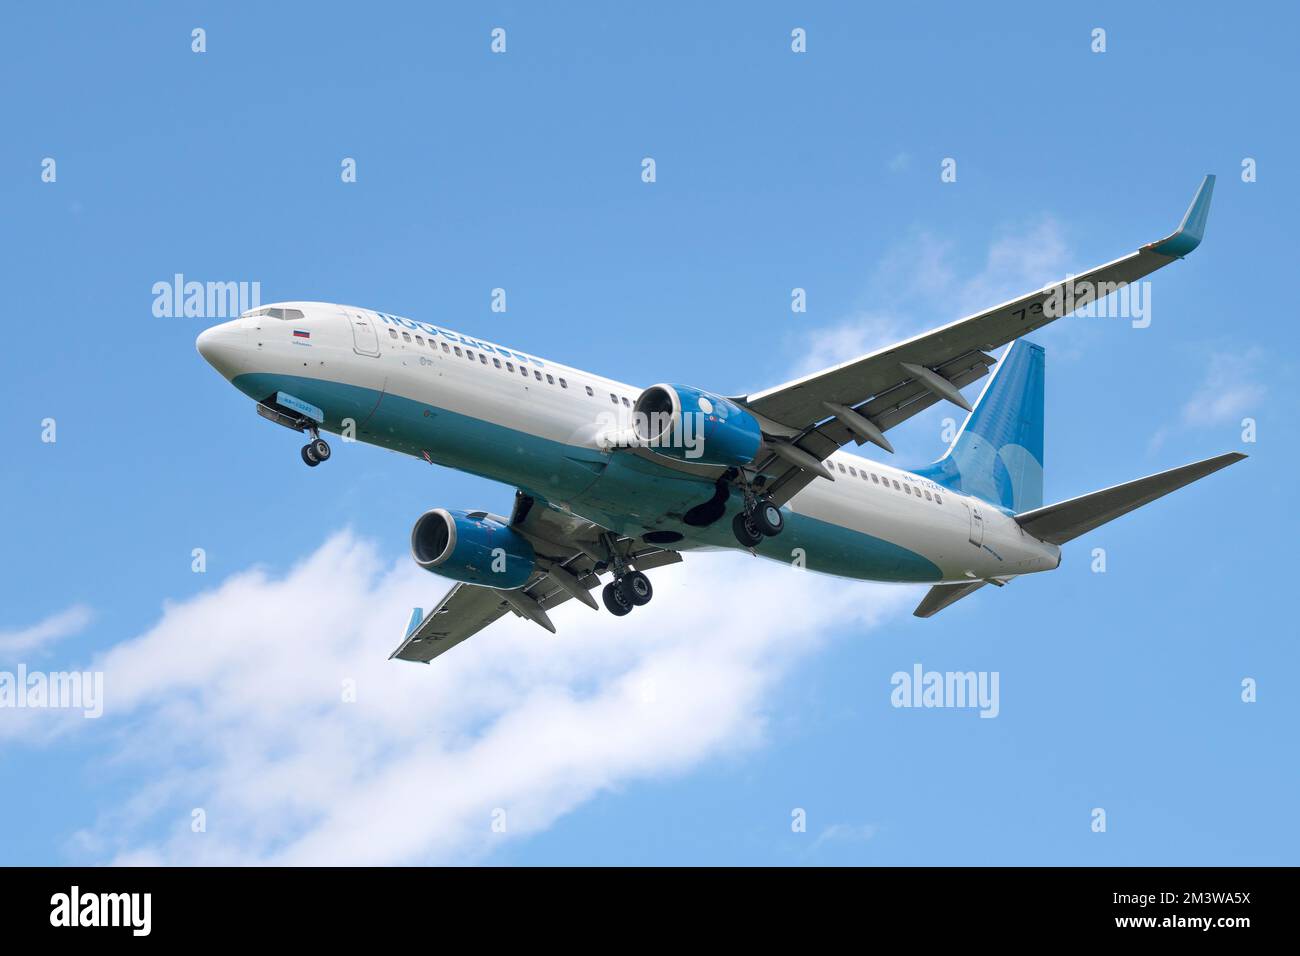 SANKT PETERSBURG, RUSSLAND - 02. JUNI 2022: Flugzeug Boeing 737-800 (RA-73242) der Pobeda Airlines auf dem Gleitweg an einem sonnigen Tag Stockfoto